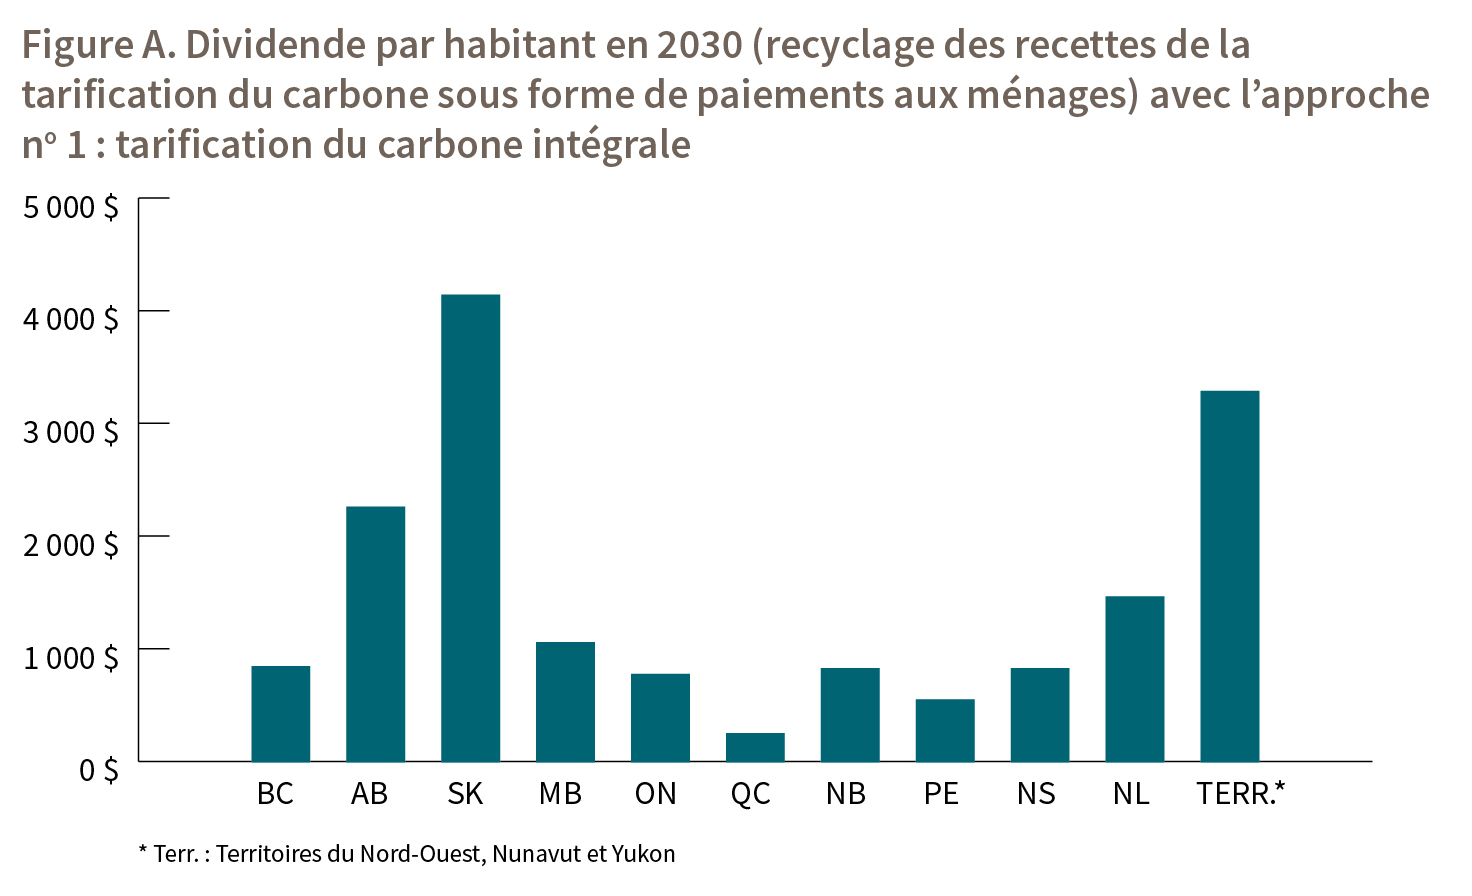 Figure A. Dividende par habitant en 2030 (recyclage des recettes de la tarification du carbone sous forme de paiements aux ménages) avec l’approche no 1 : tarification du carbone intégrale